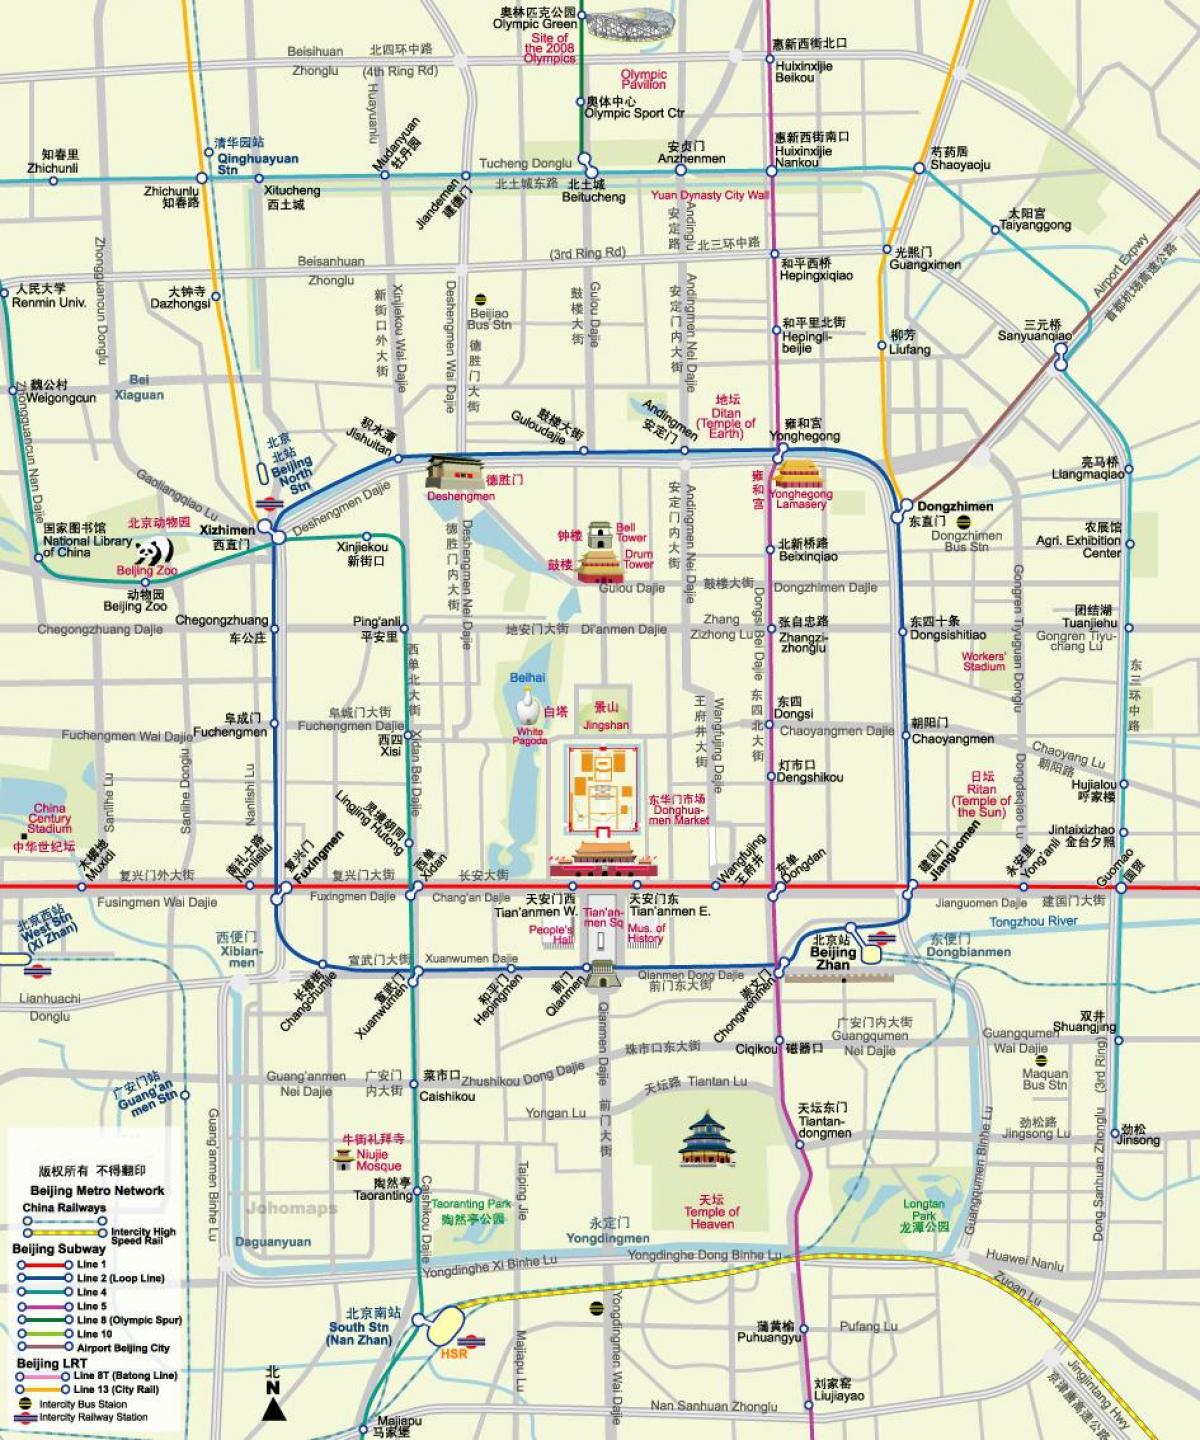 kort over Beijing subway kort med turist-attraktioner